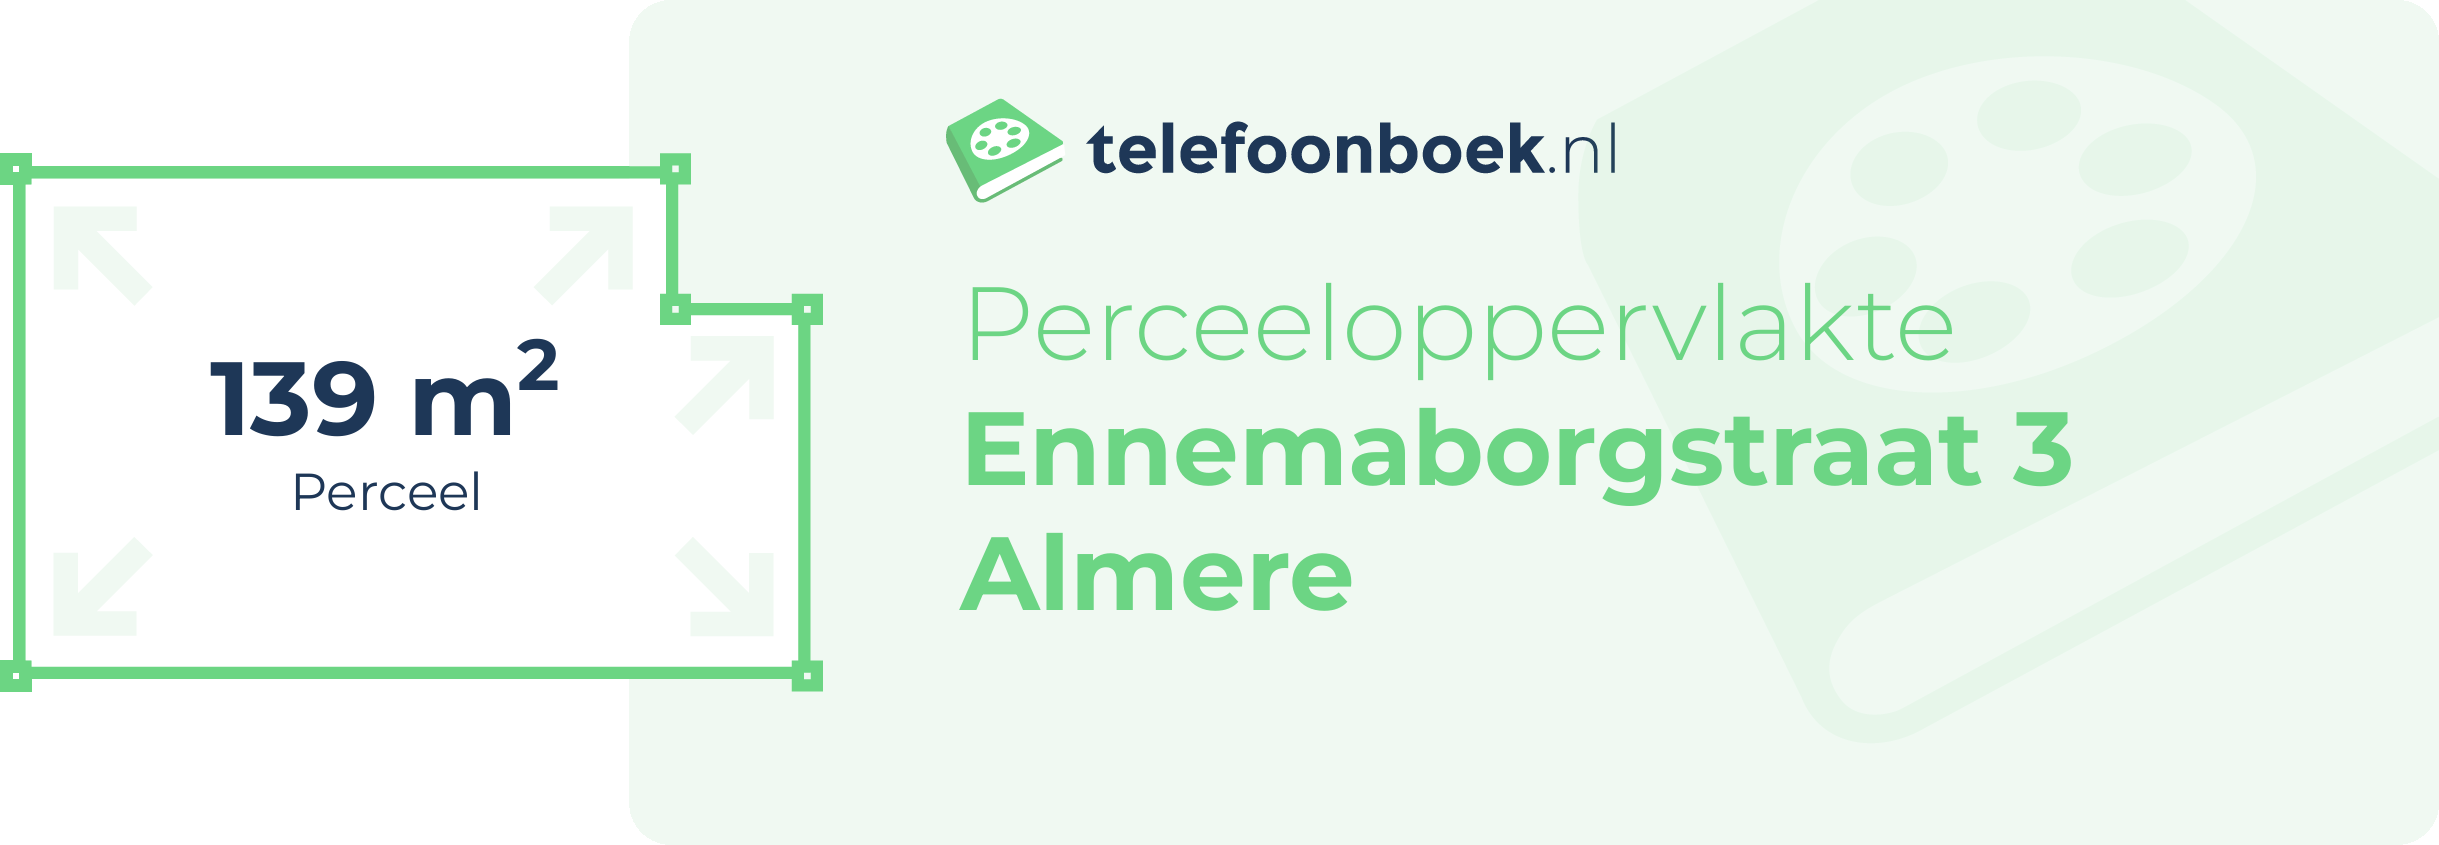 Perceeloppervlakte Ennemaborgstraat 3 Almere